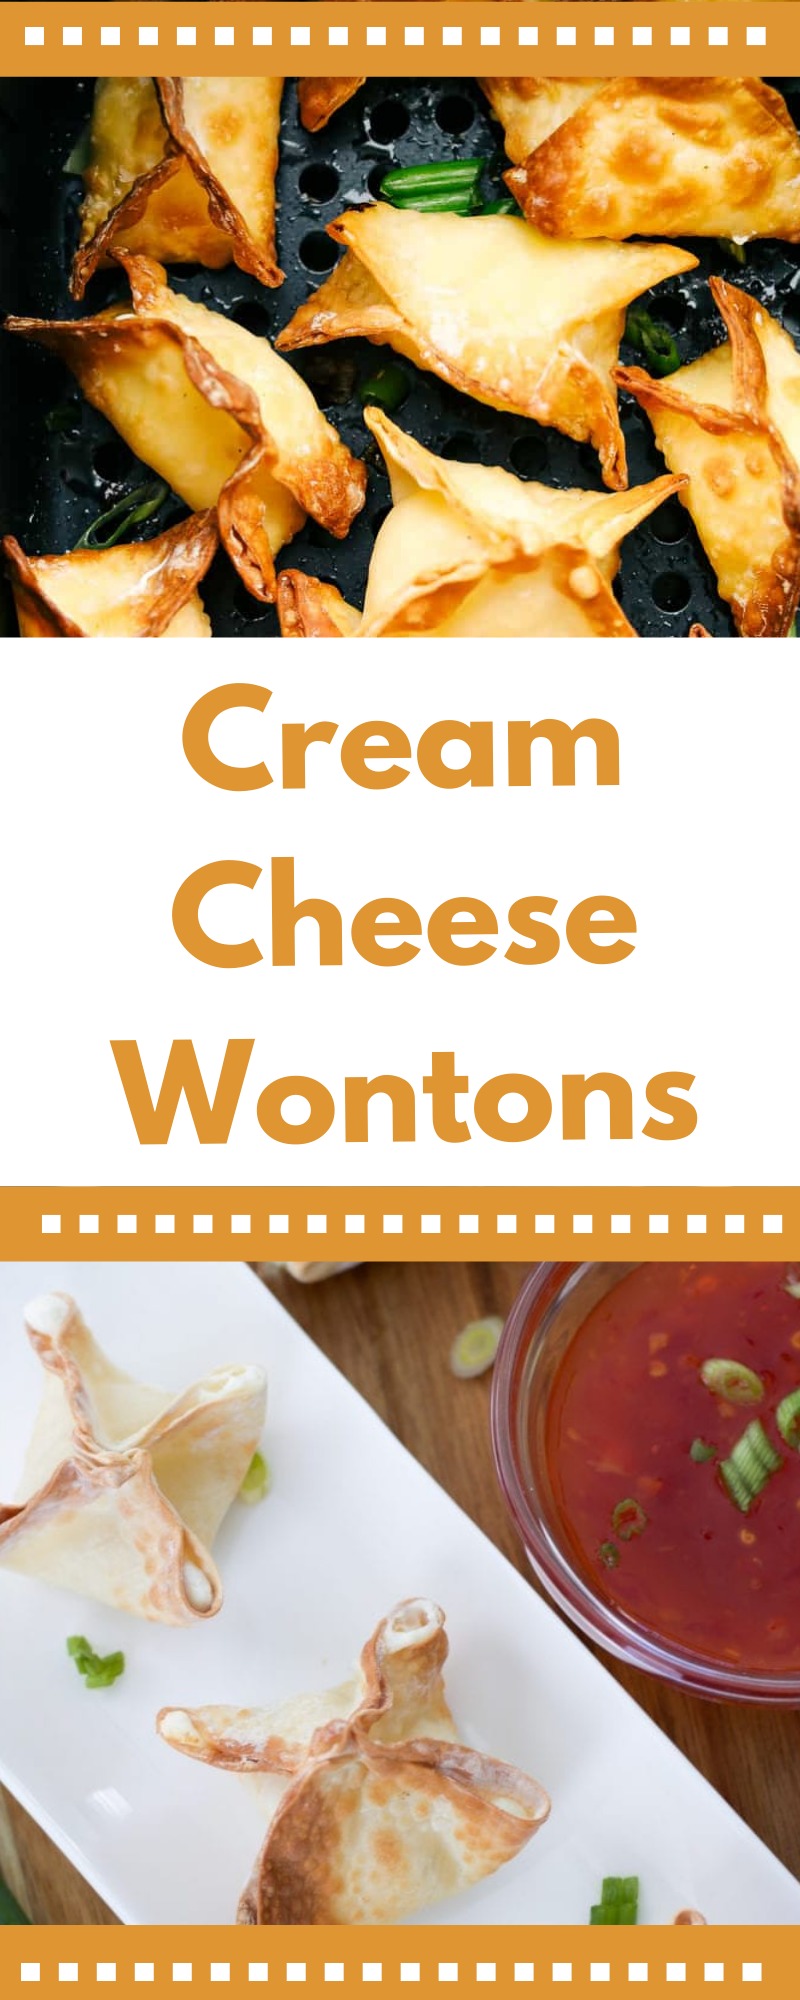 cream cheese wontons